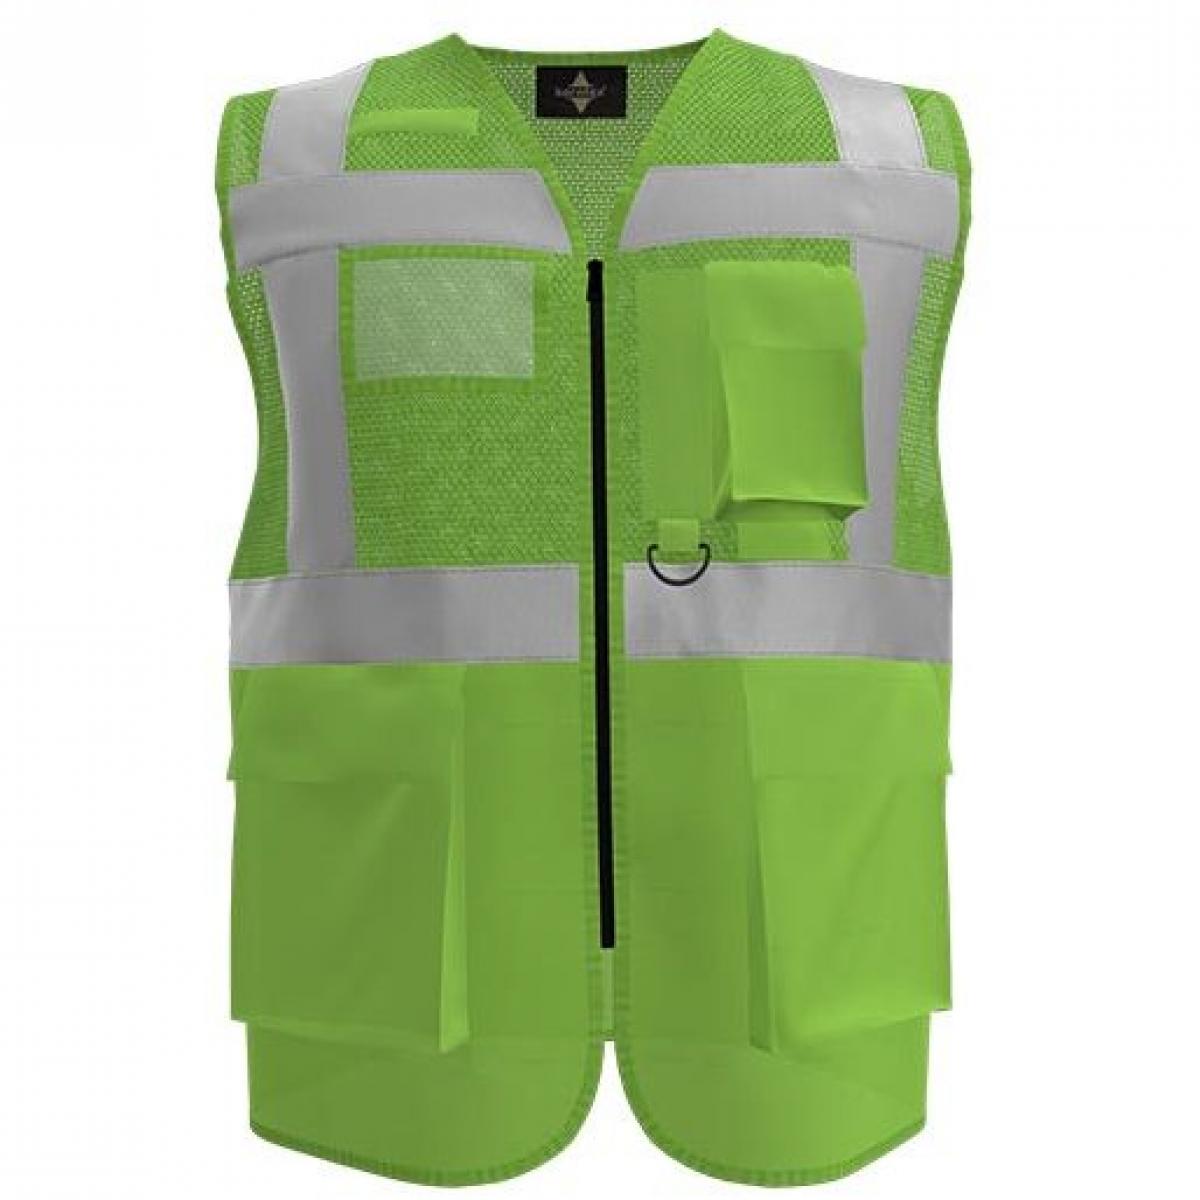 Hersteller: Korntex Herstellernummer: KXEXQ Artikelbezeichnung: Multifunkitons-Warnweste Mesh Multifunction Vest Farbe: Lime Green